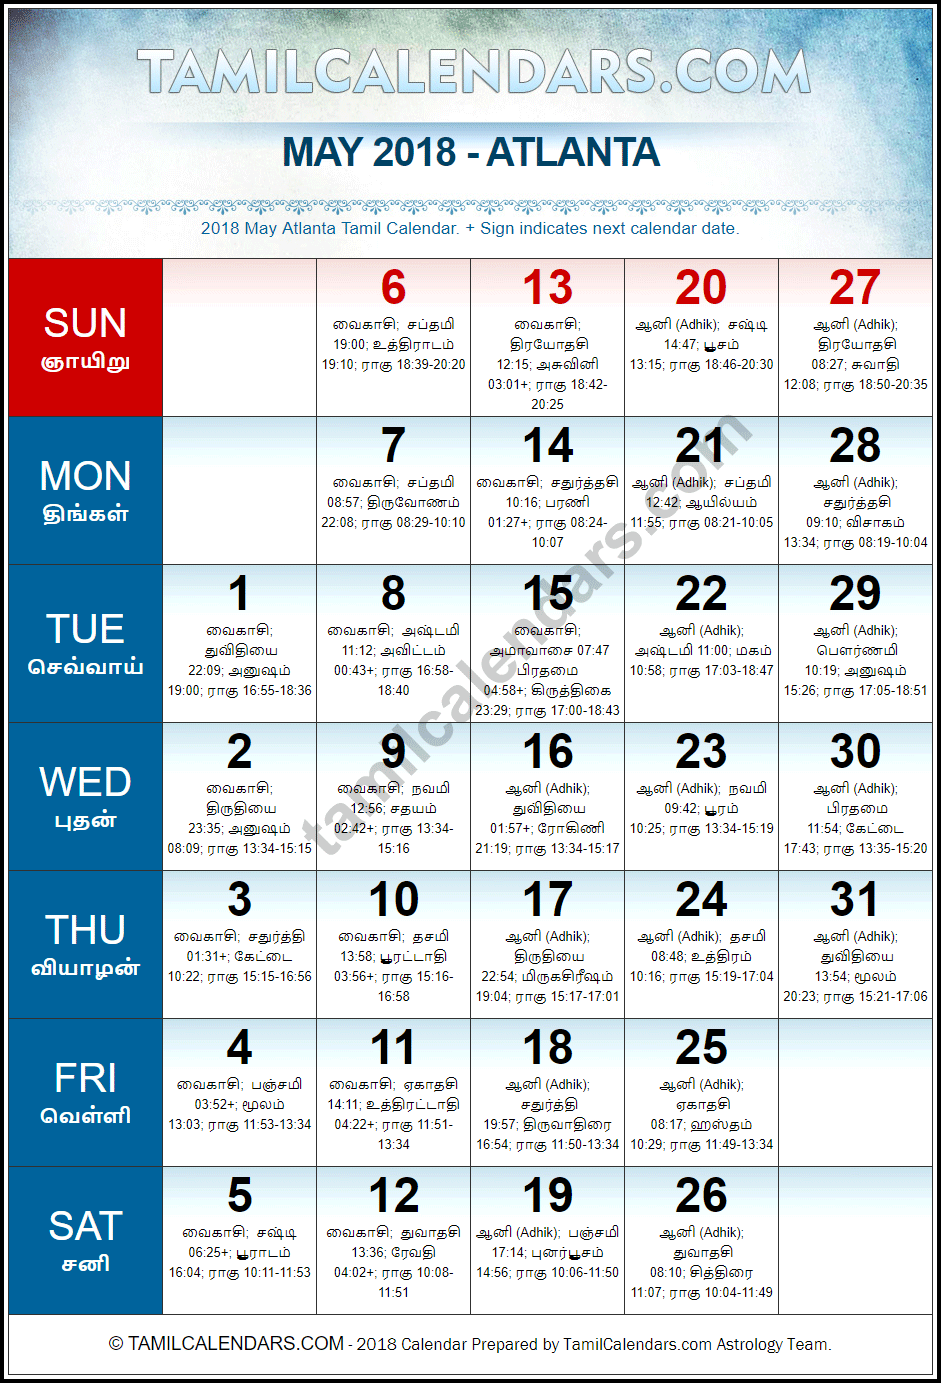 May 2018 Tamil Calendar for Atlanta, USA